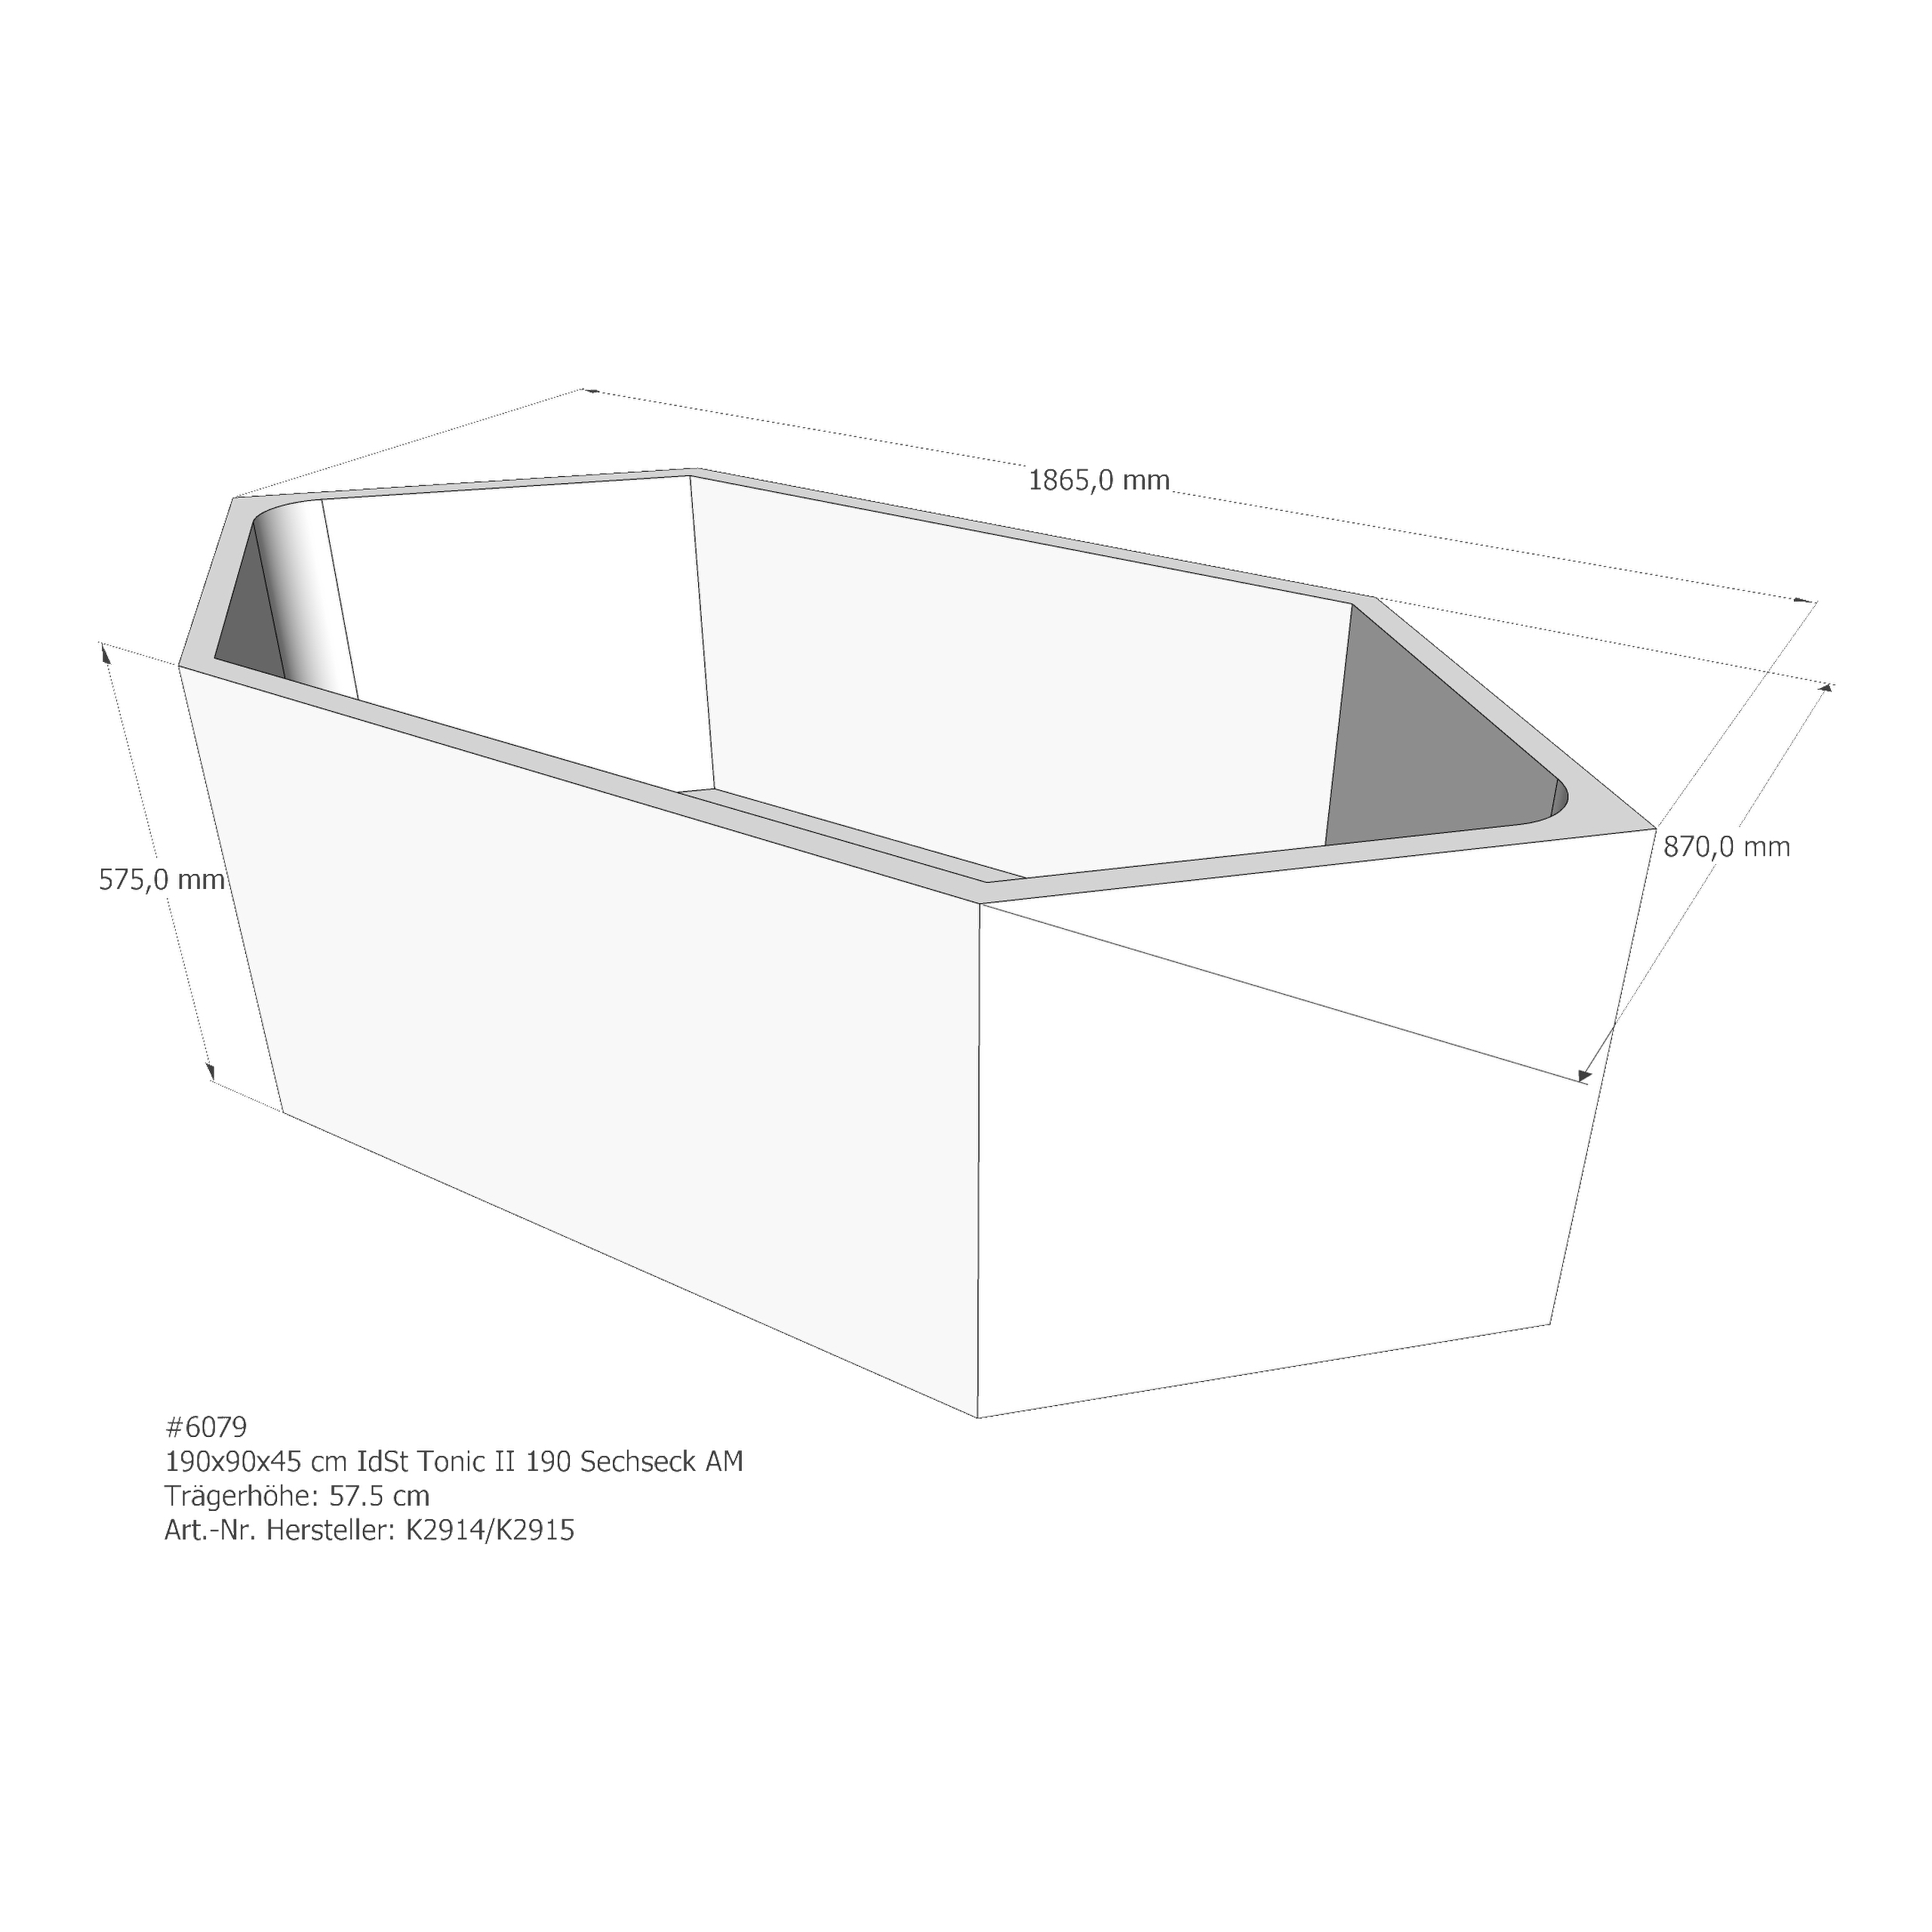 Badewannenträger für Ideal Standard Tonic II 190 Sechseck 190 × 90 × 45 cm